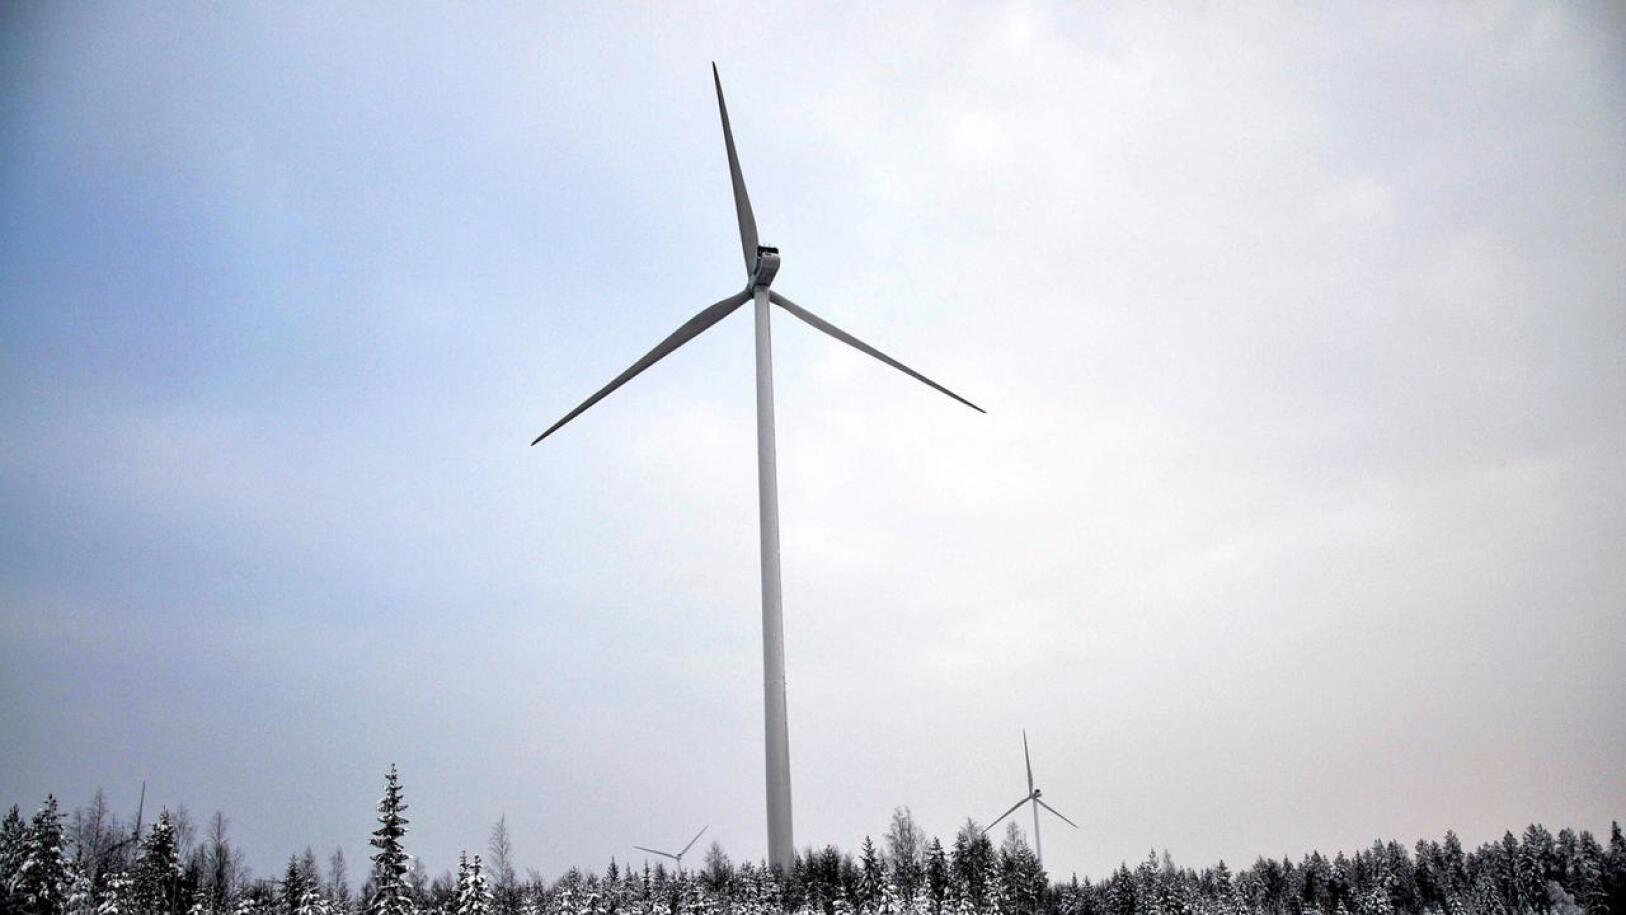 Tuulivoima-kansalaisyhdistys kommentoi Haapavesi-lehdessä julkaistua juttua sähkönsiirtolinjoista sekä aiheeseen liittyvää kolumnia.